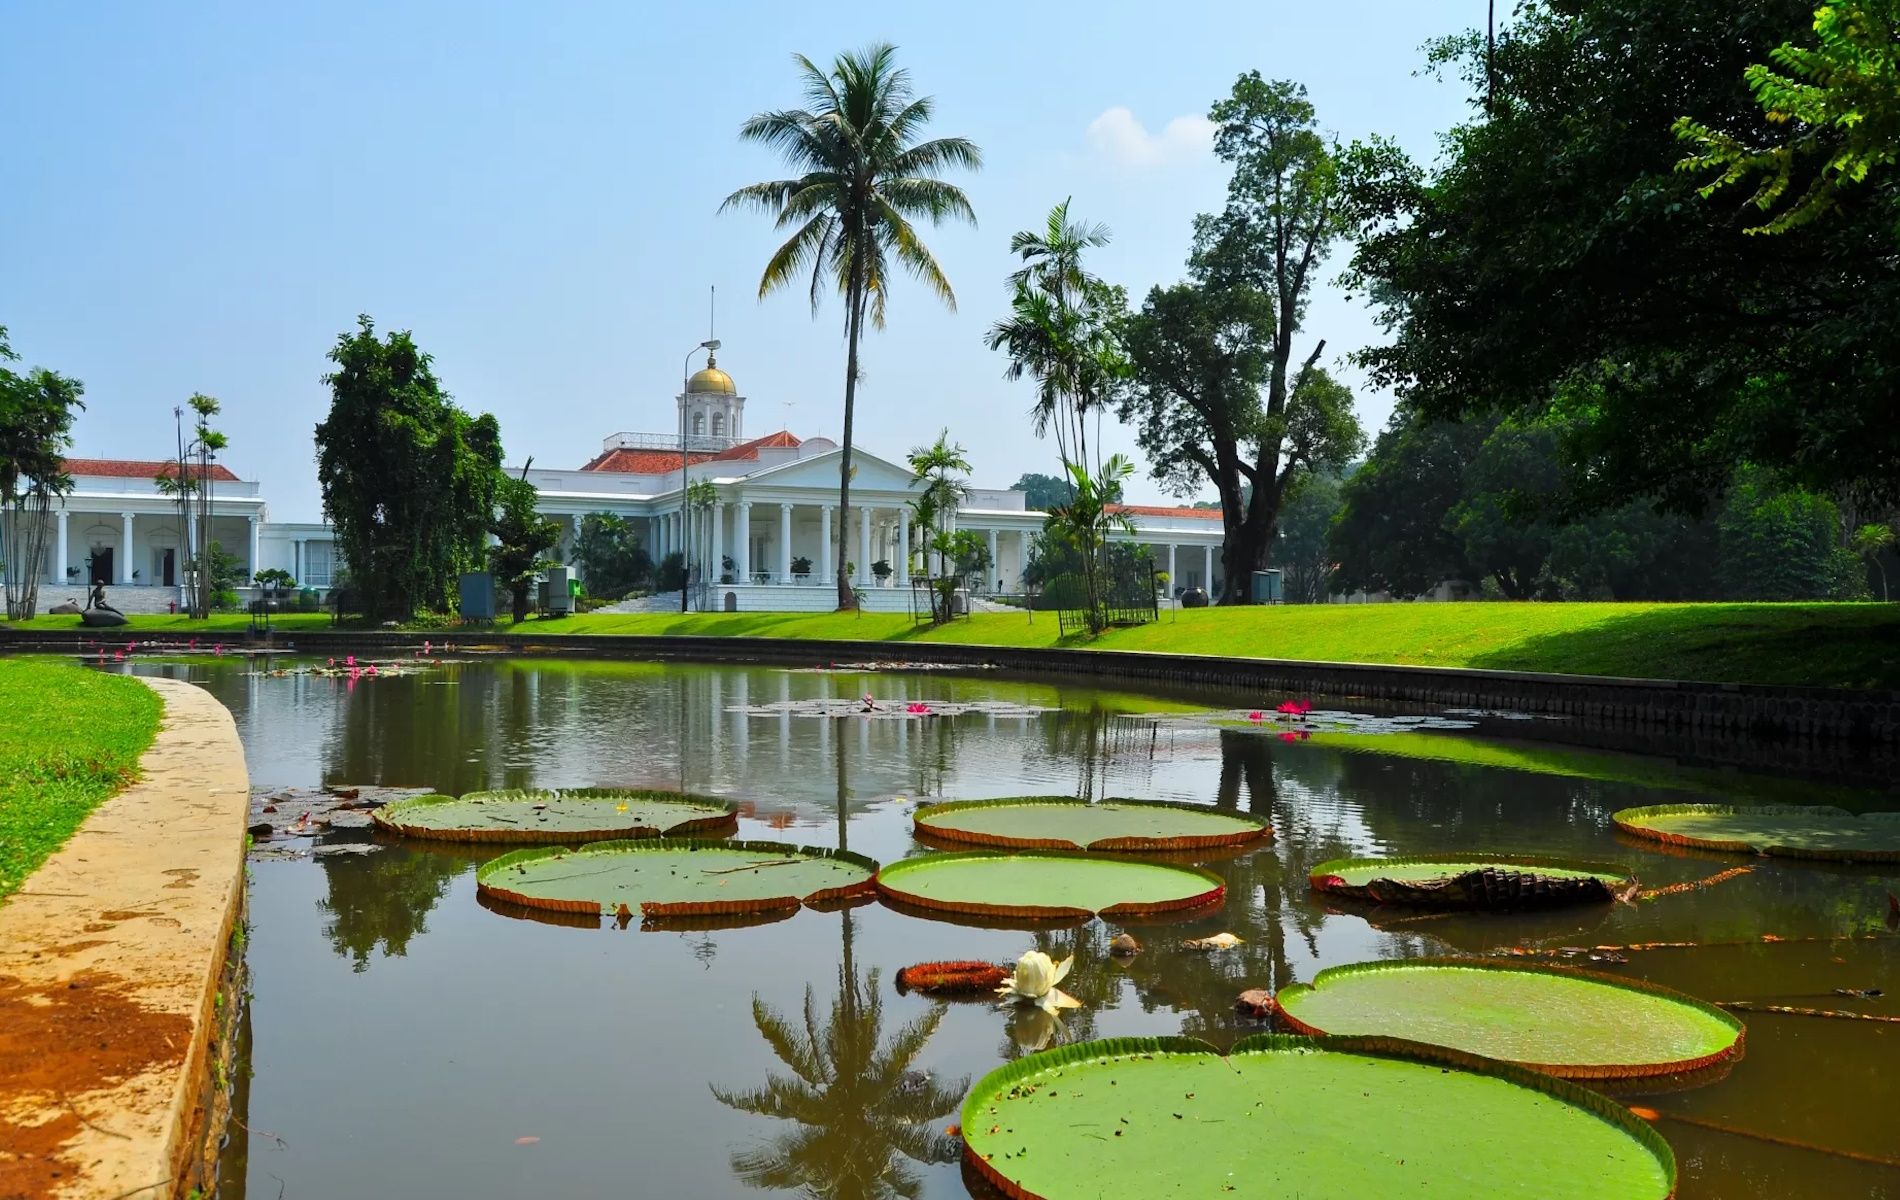 Kebun Raya Bogor adalah wisata alam populer berupa kebun botani terbesar di Indonesia yang telah berdiri sejak era penjajahan Belanda.